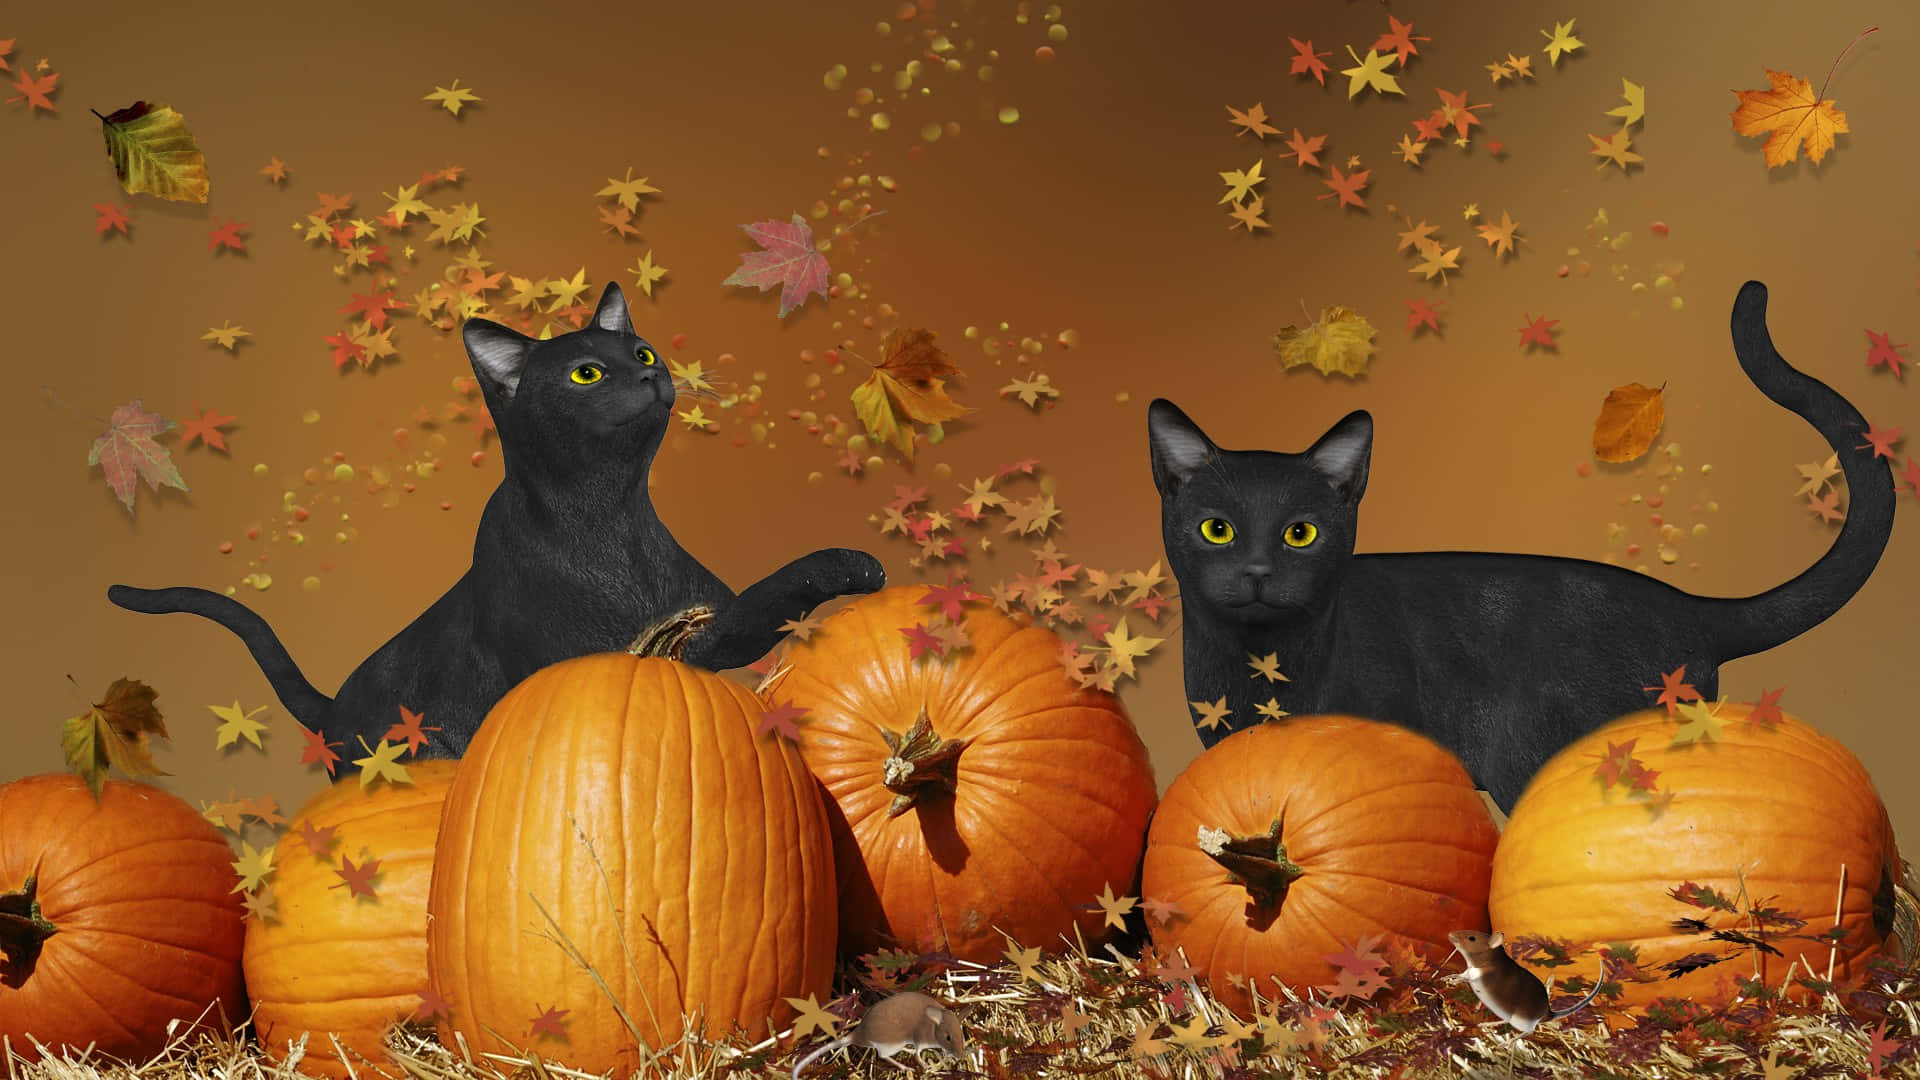 Imagende Lindos Gatos Negros Jugando Con Hojas De Otoño En Halloween.